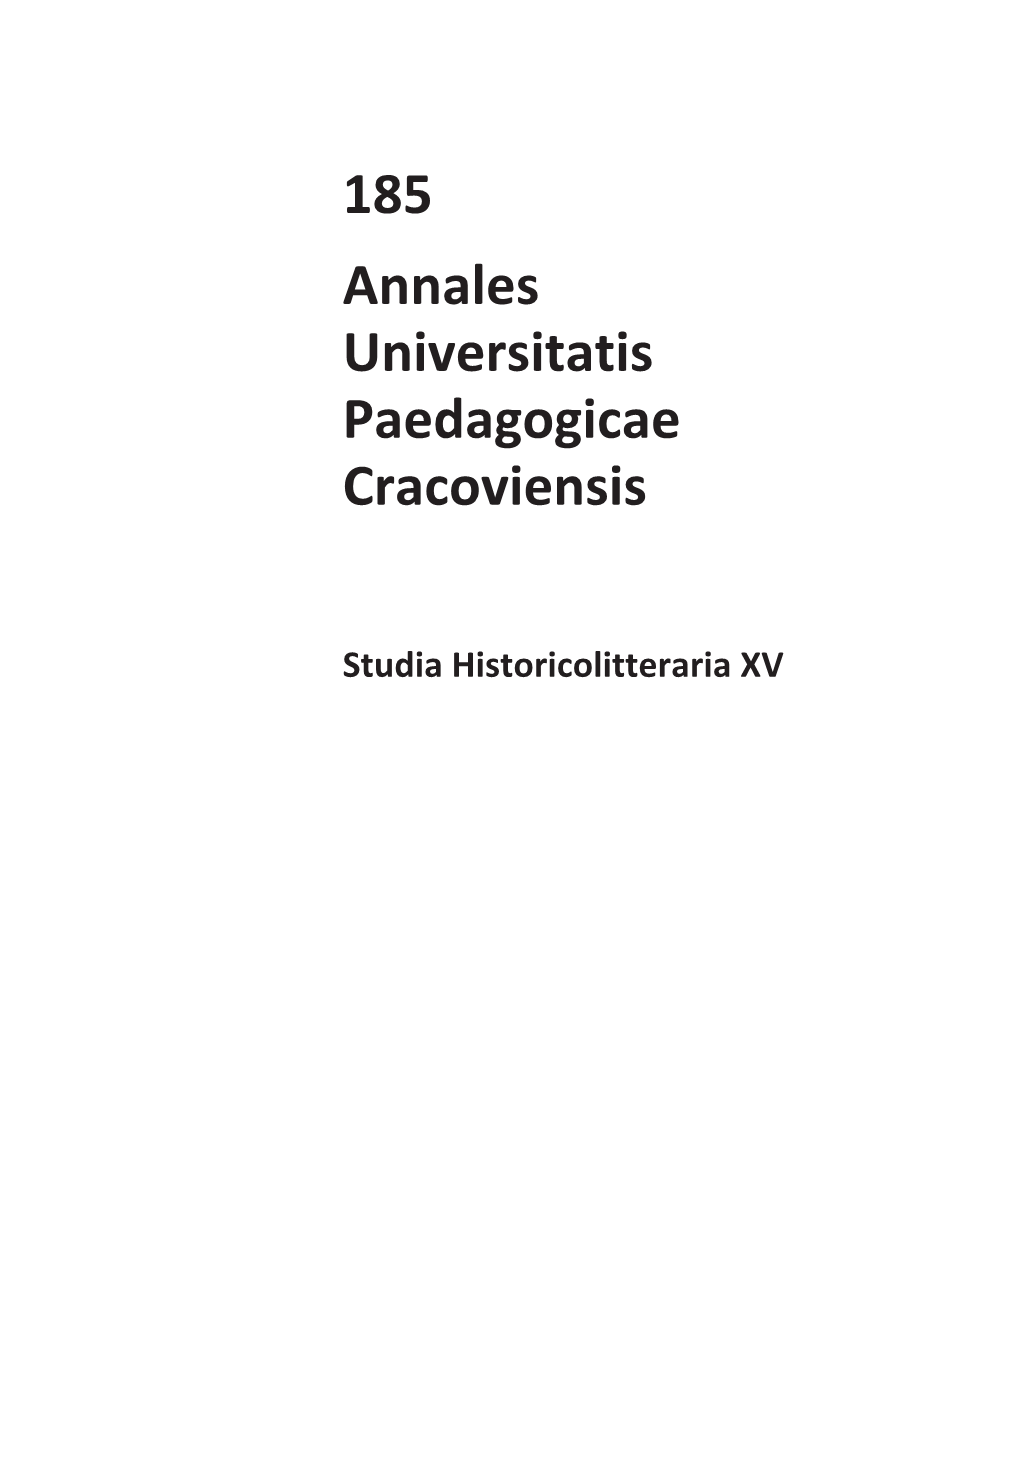 185 Annales Universitatis Paedagogicae Cracoviensis